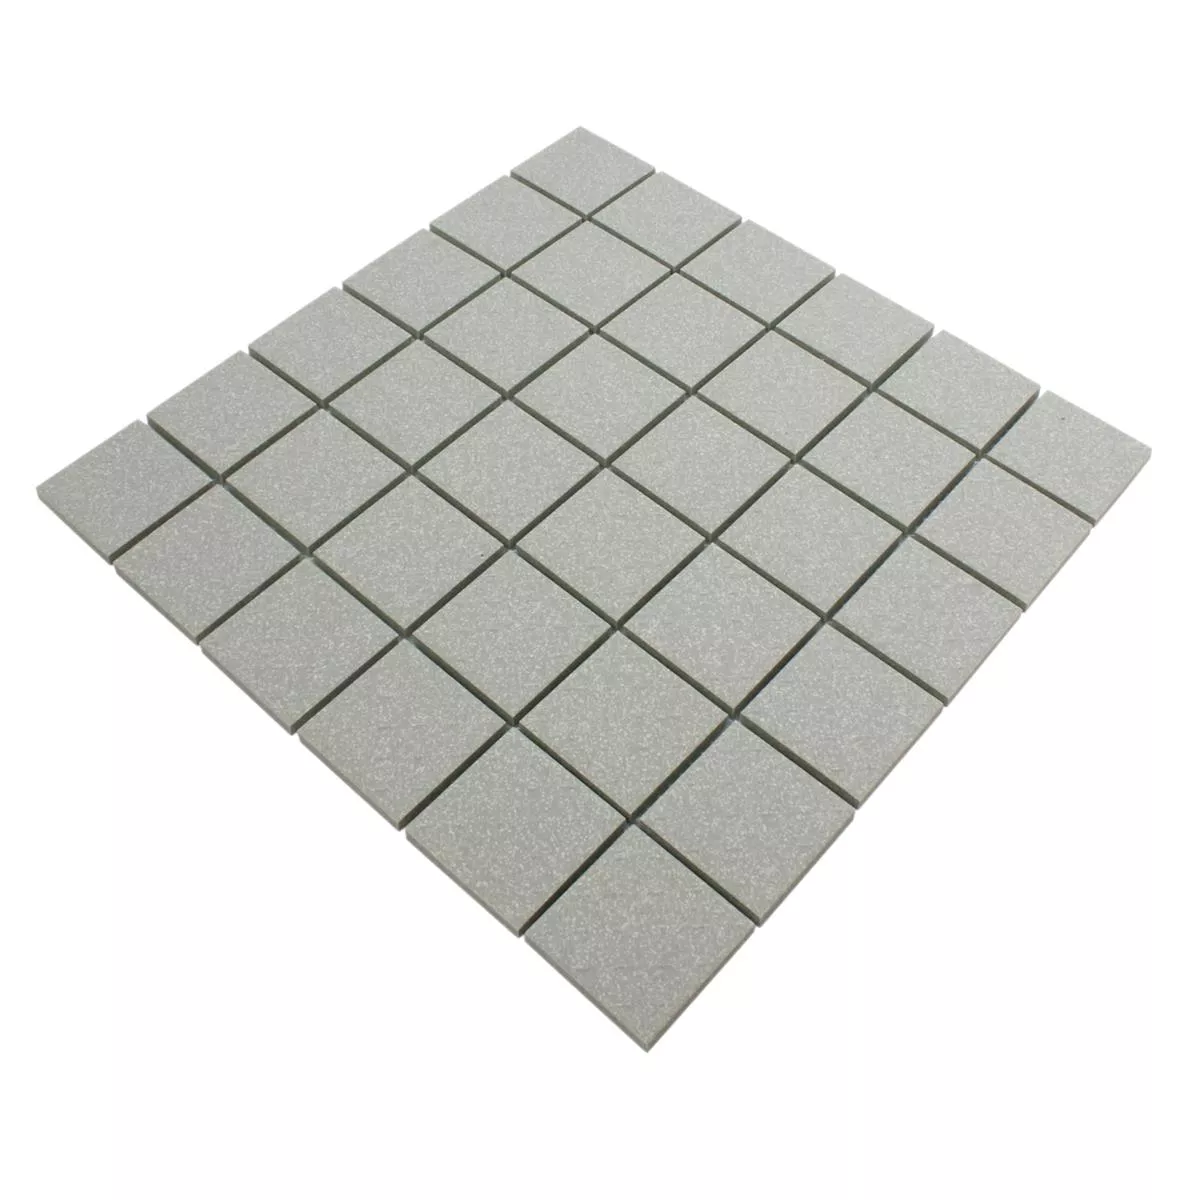 Sample Mosaic Tiles Ceramic Grey Mat R11